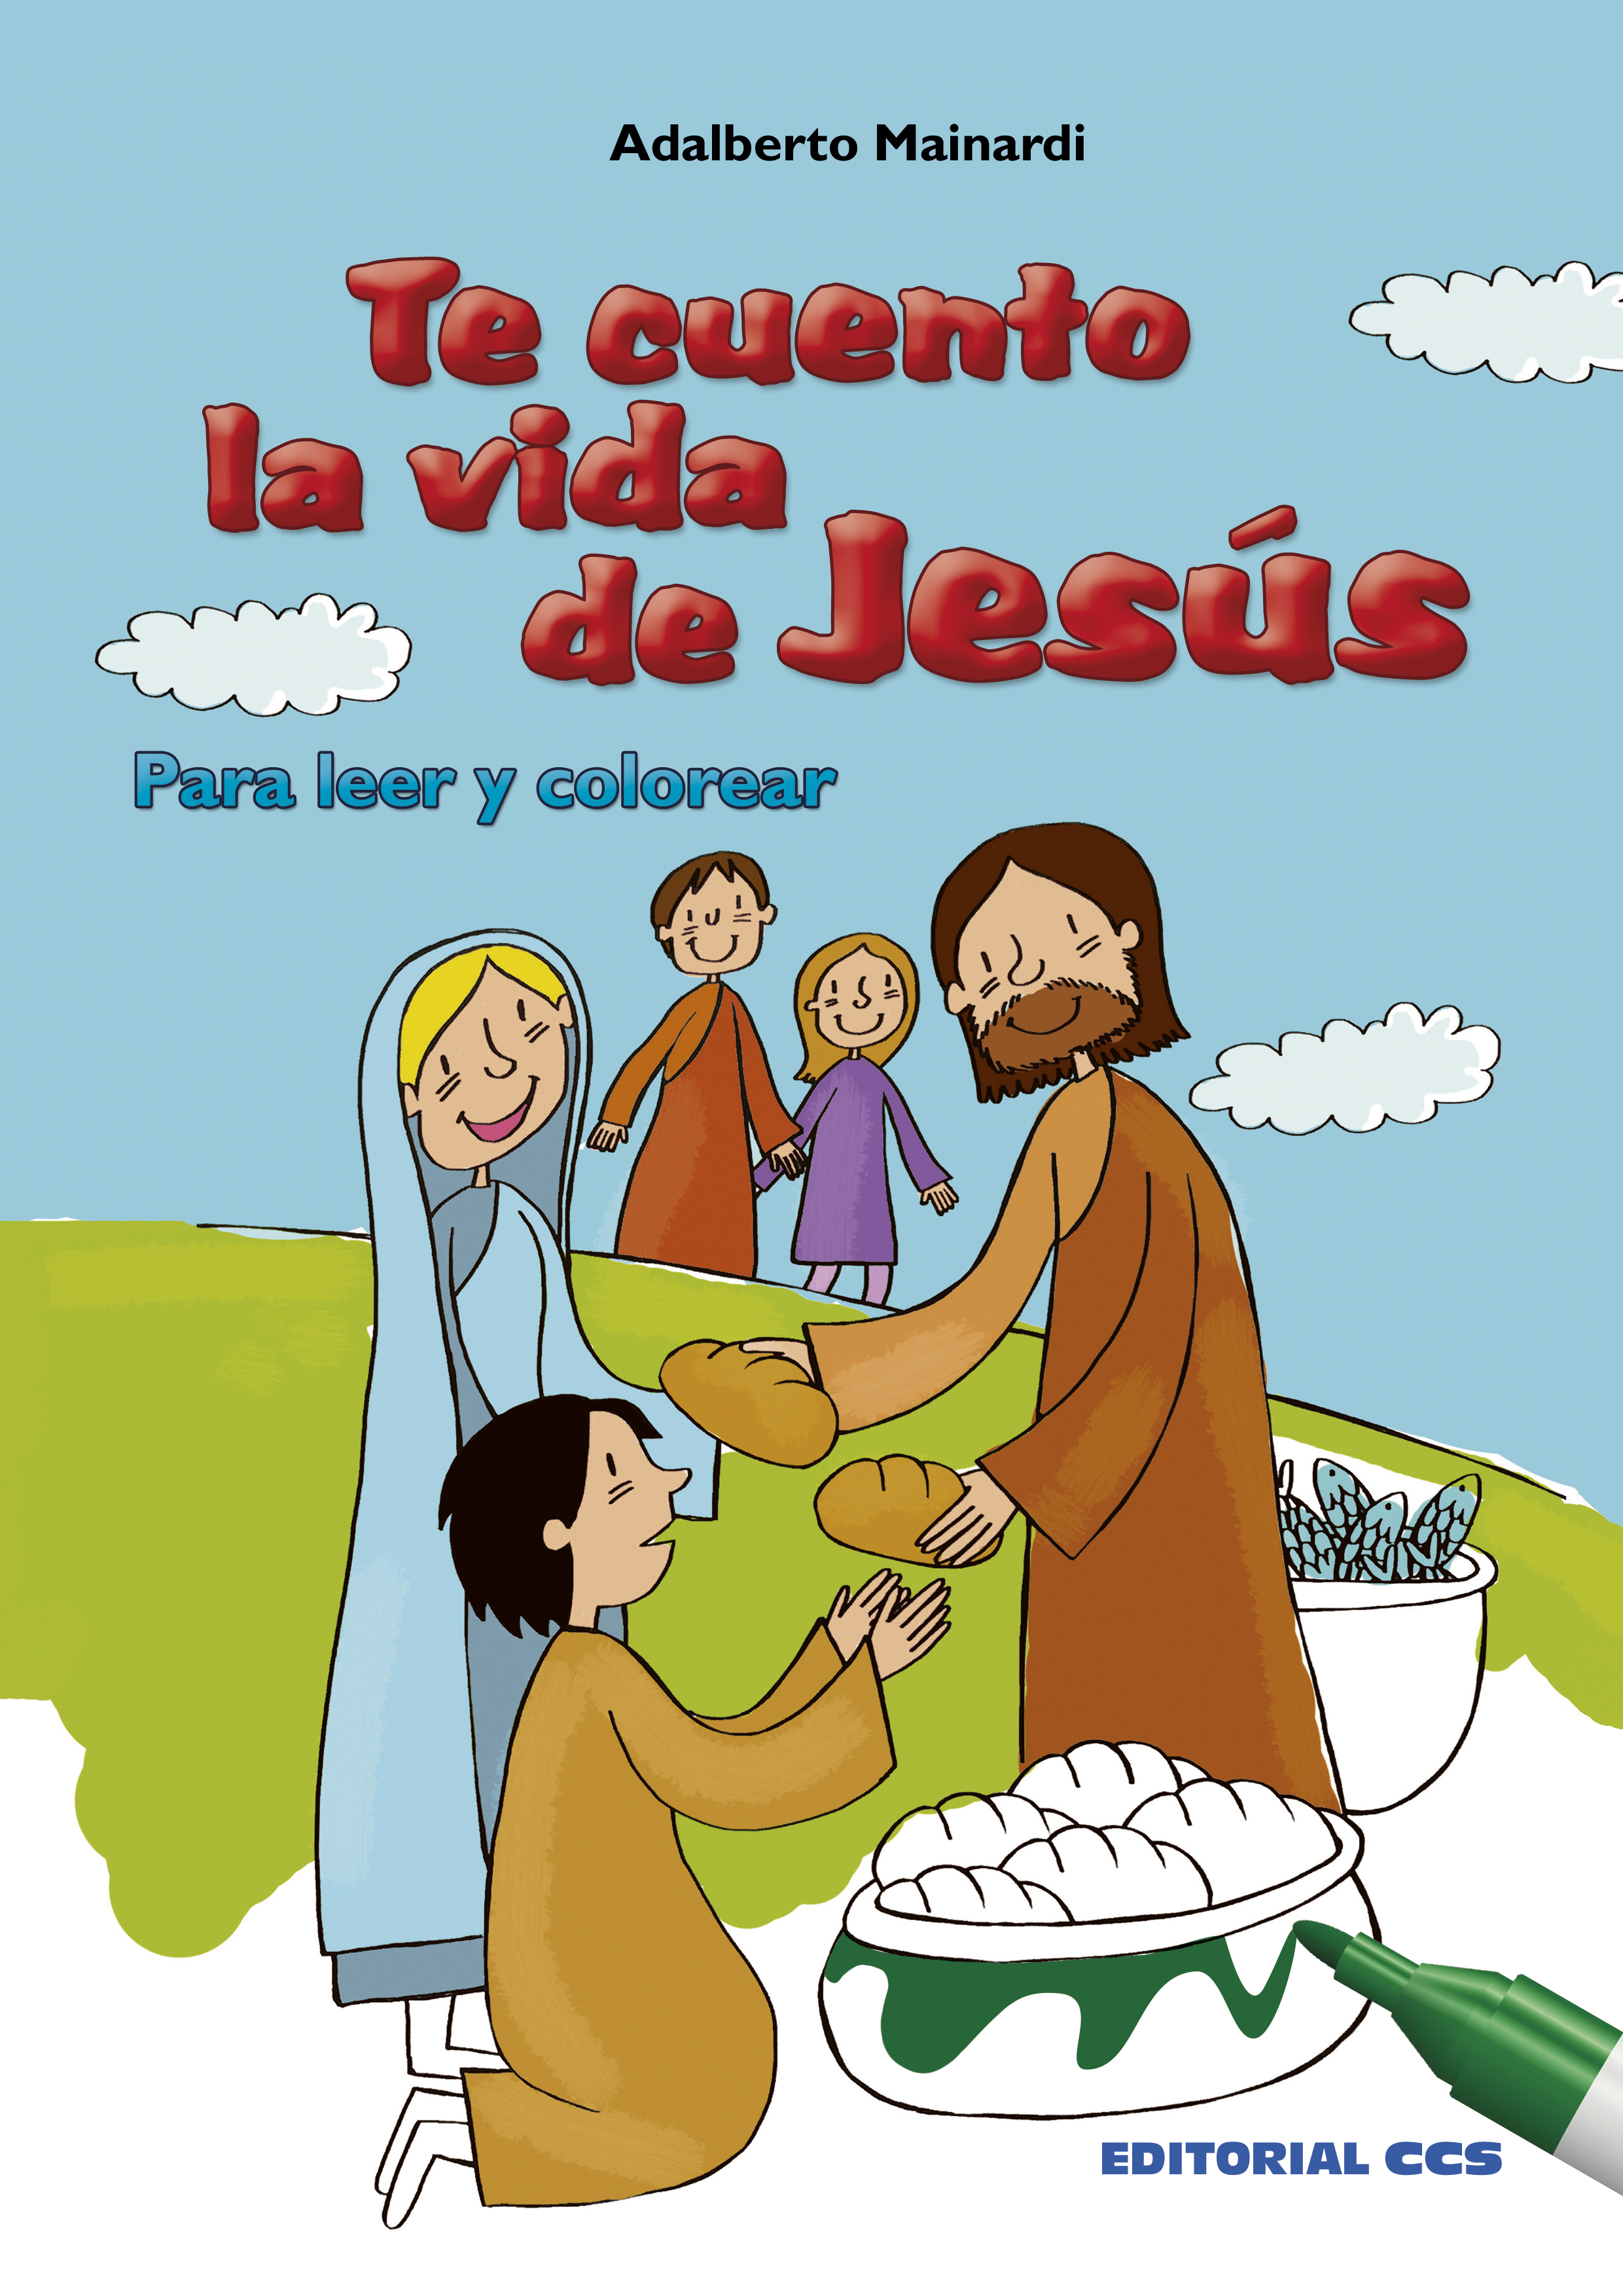 Editorial CCS - Libro: TE CUENTO LA VIDA DE JESÚS